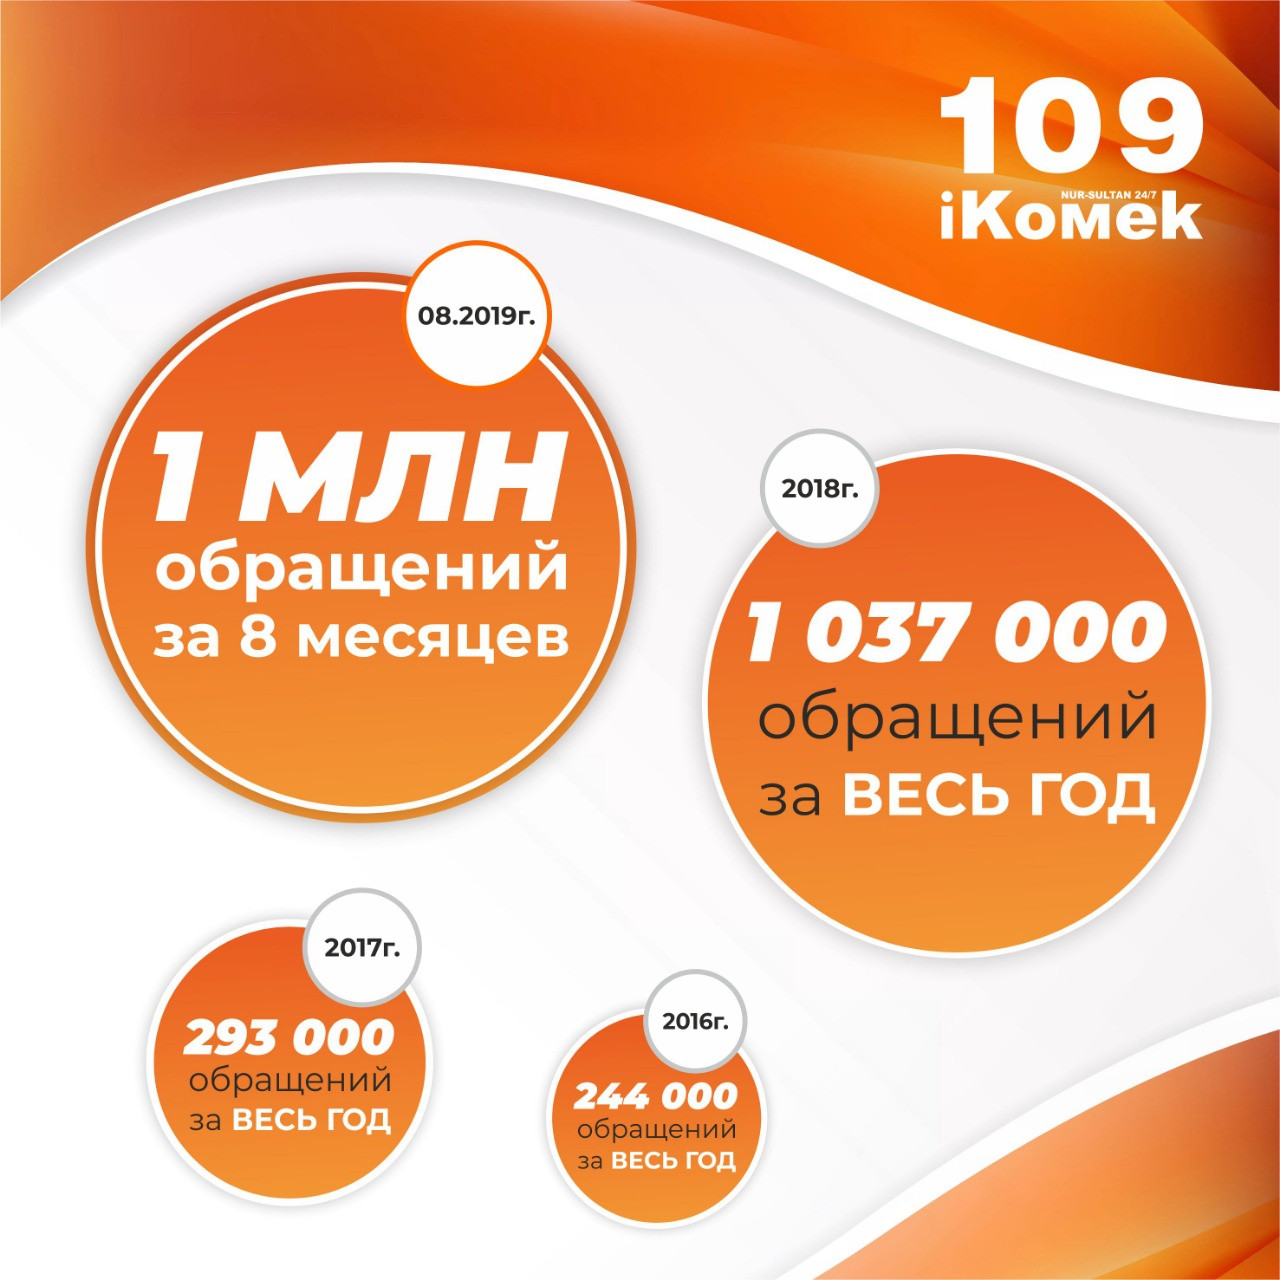 Единый контакт-центр iKOMEK109 с начала года принял 1 миллион обращений